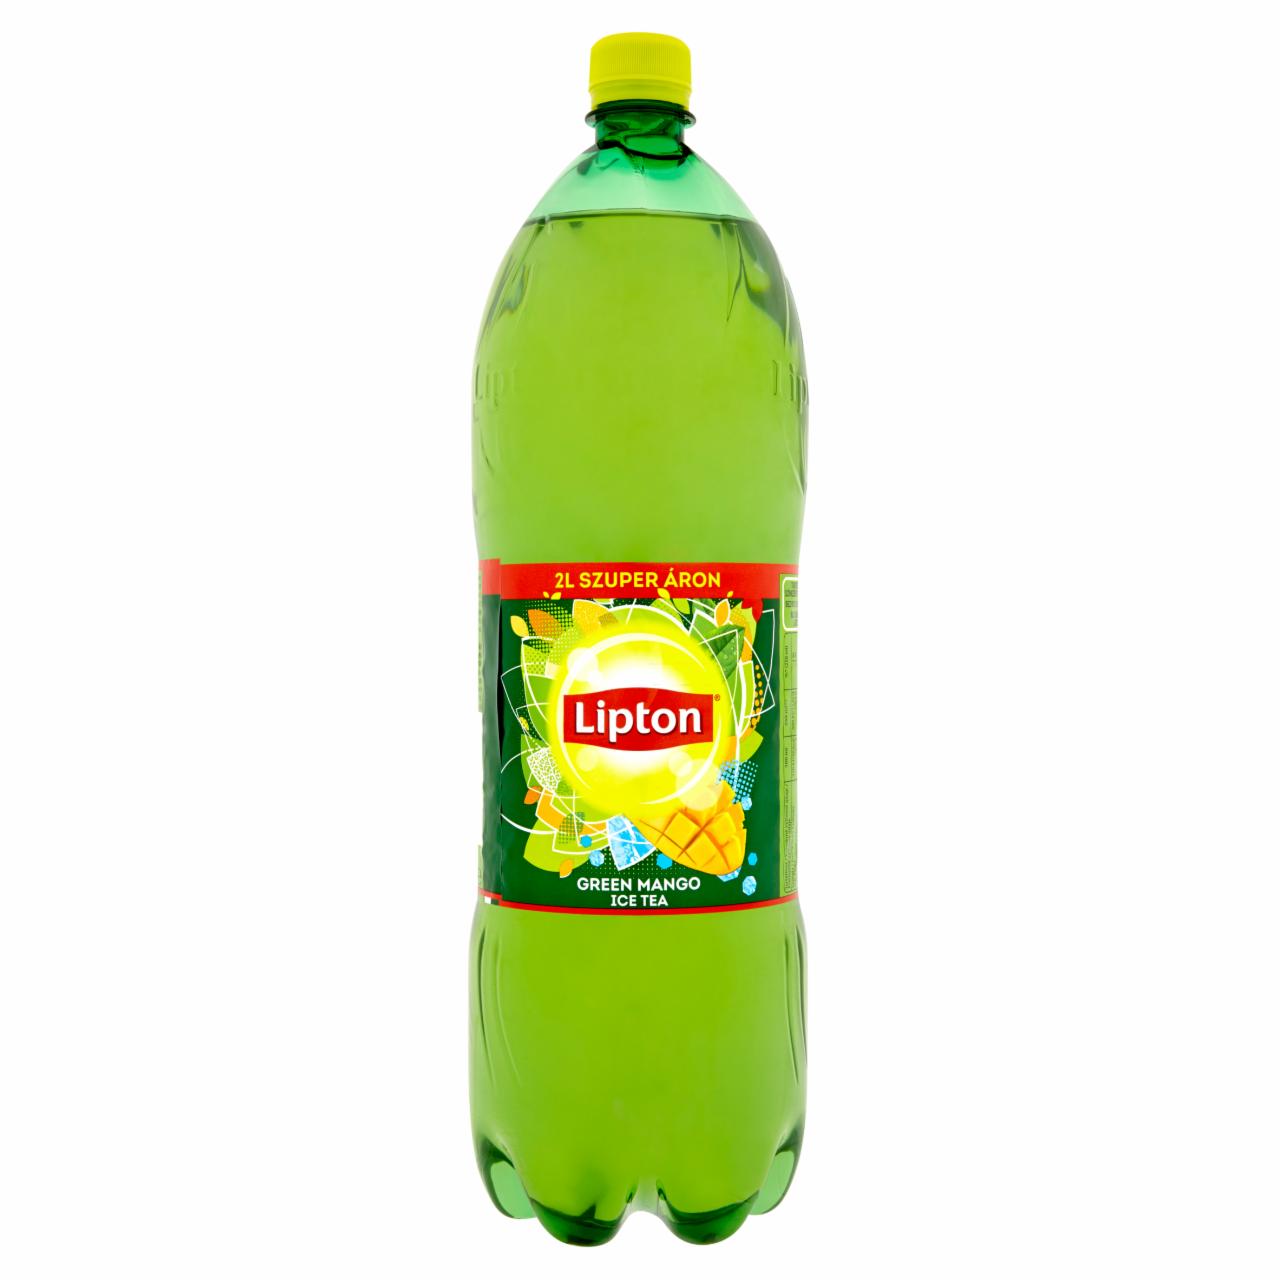 Képek - Lipton mangóízű szénsavmentes üdítőital 2 l